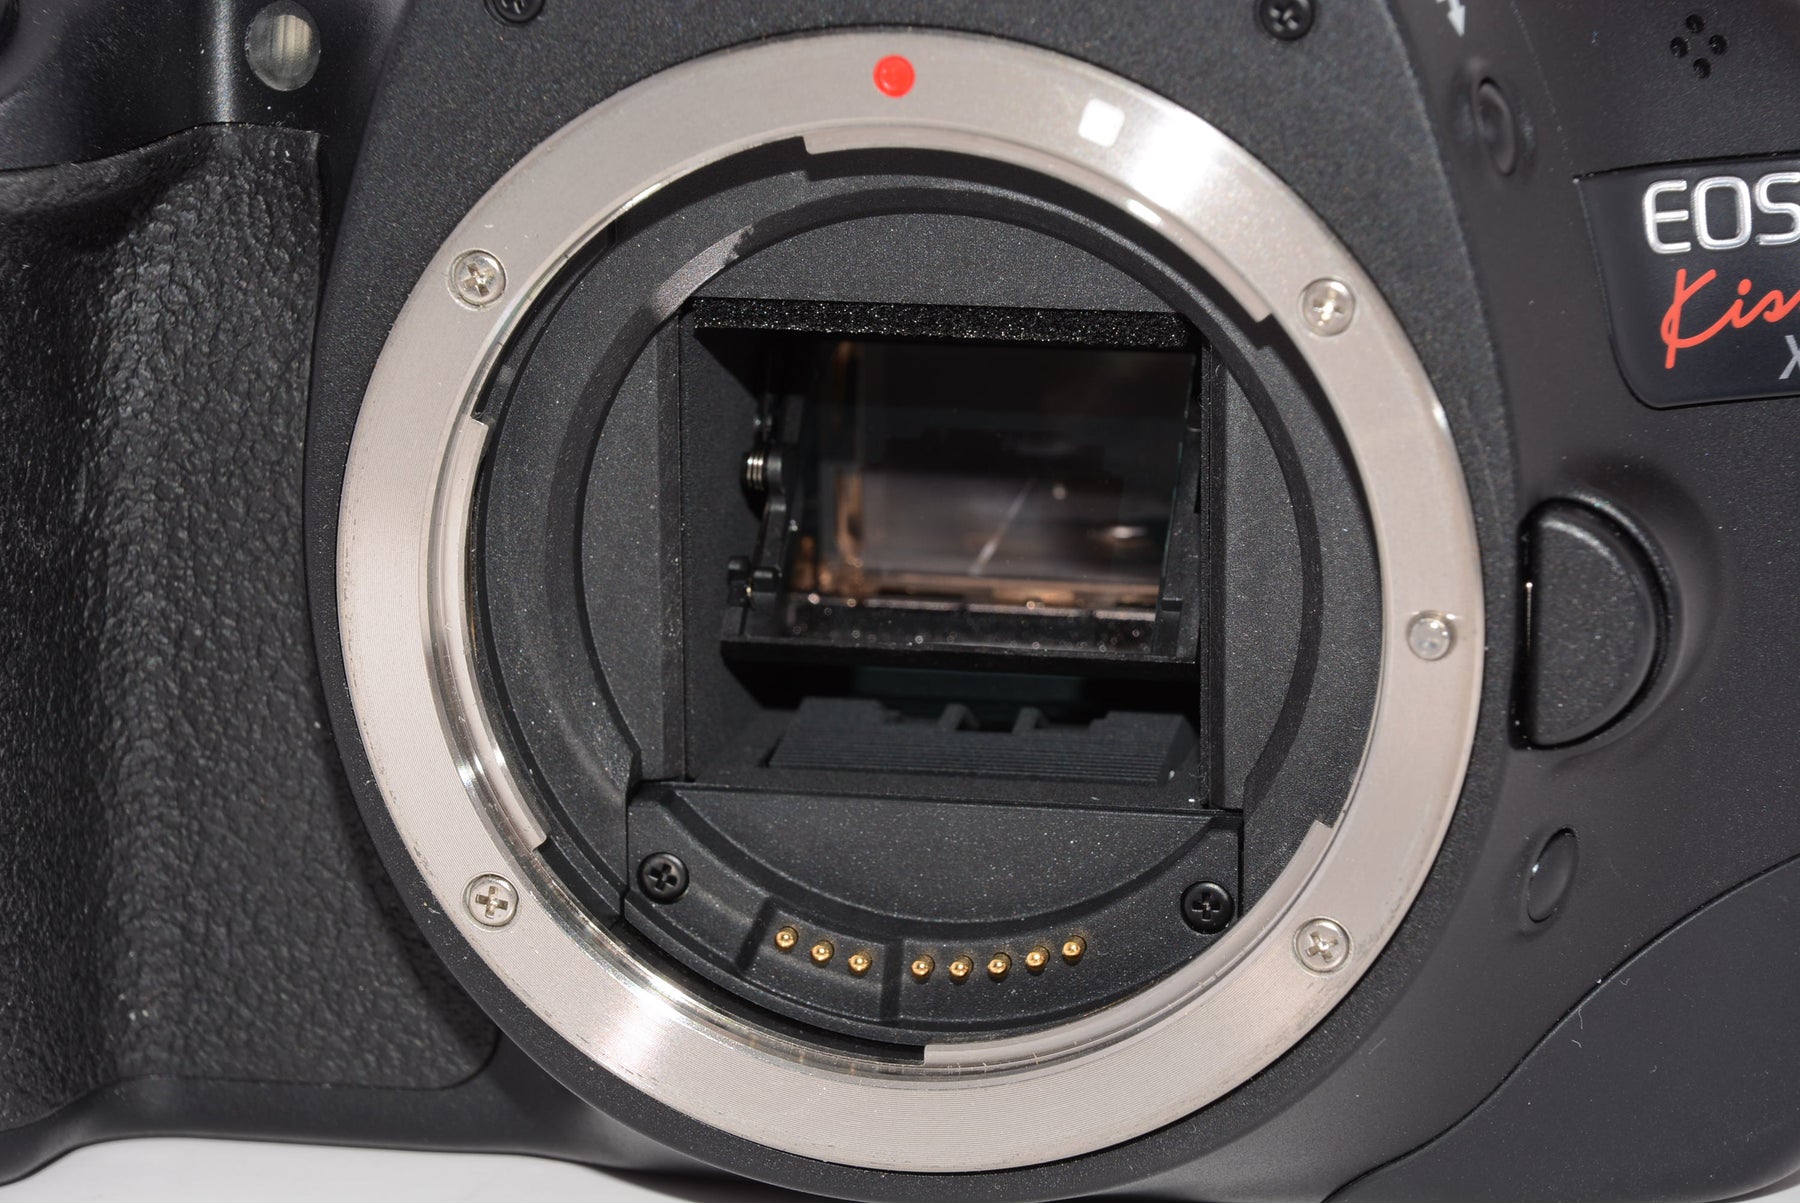 外観特上級】Canon デジタル一眼レフカメラ EOS Kiss X4 ボディ KISSX4-BODY